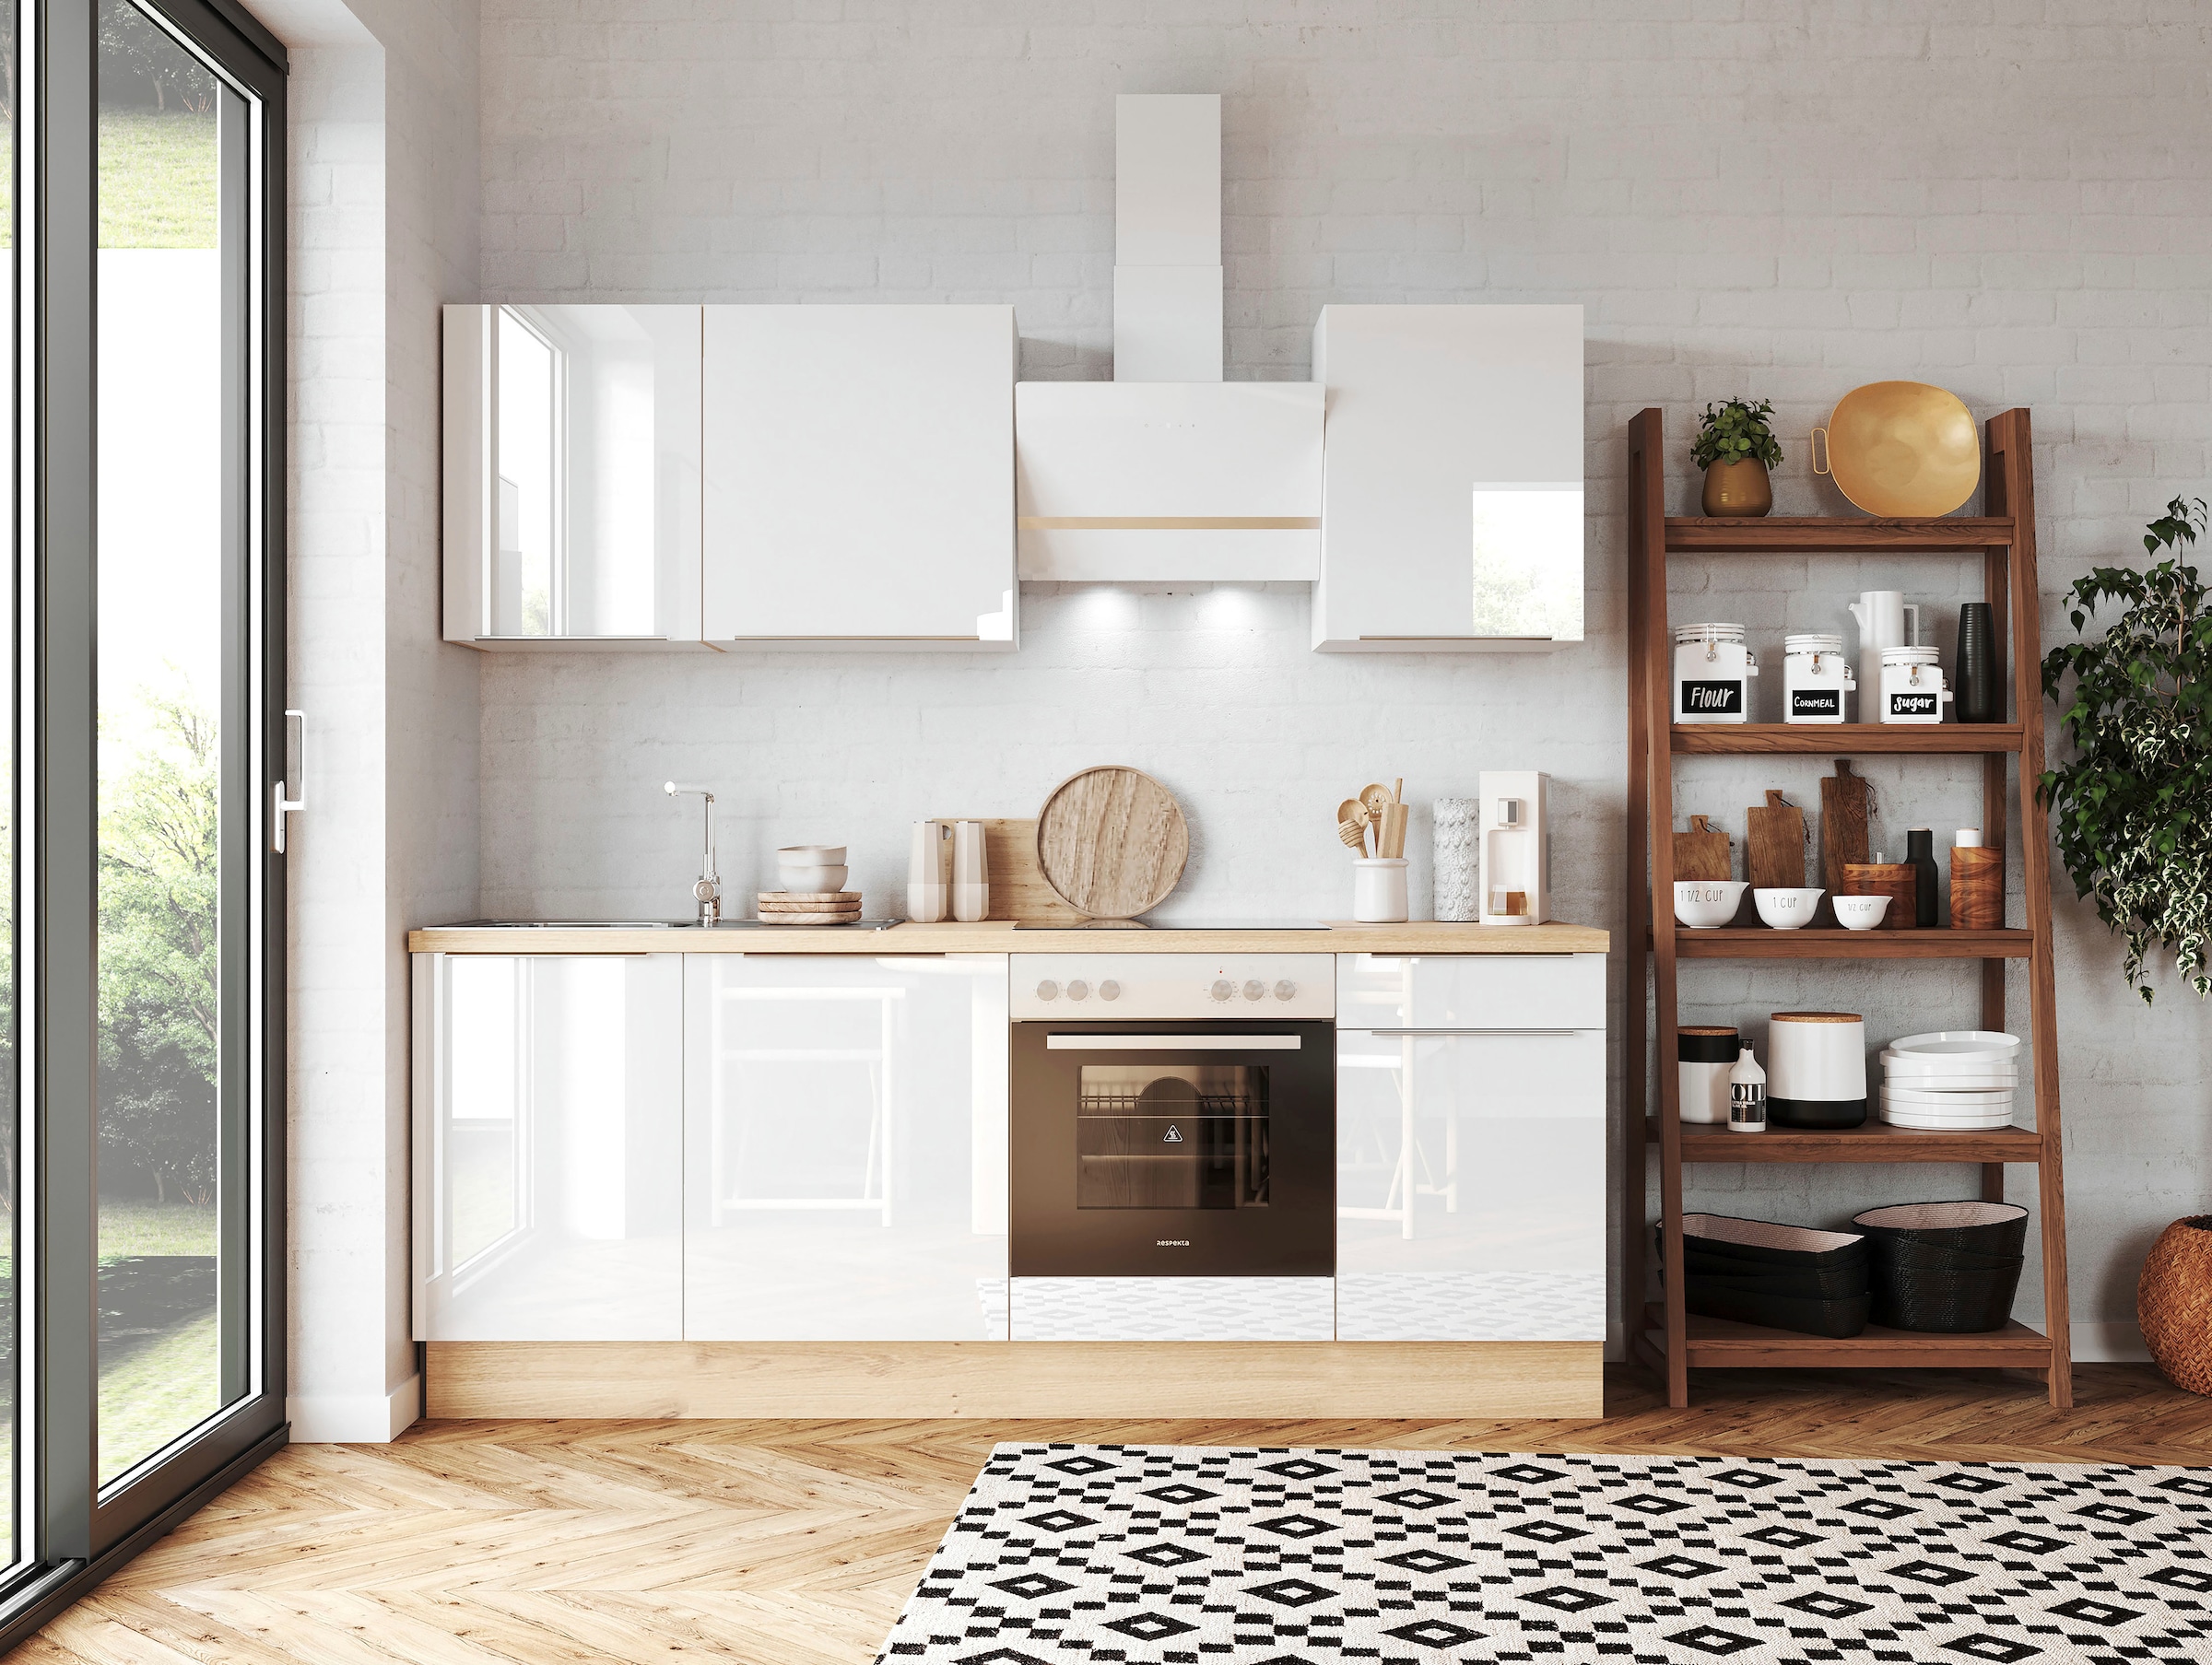 RESPEKTA Küchenzeile »Safado aus der Serie Marleen«, Breite 220 cm, hochwertige Ausstattung wie Soft Close Funktion